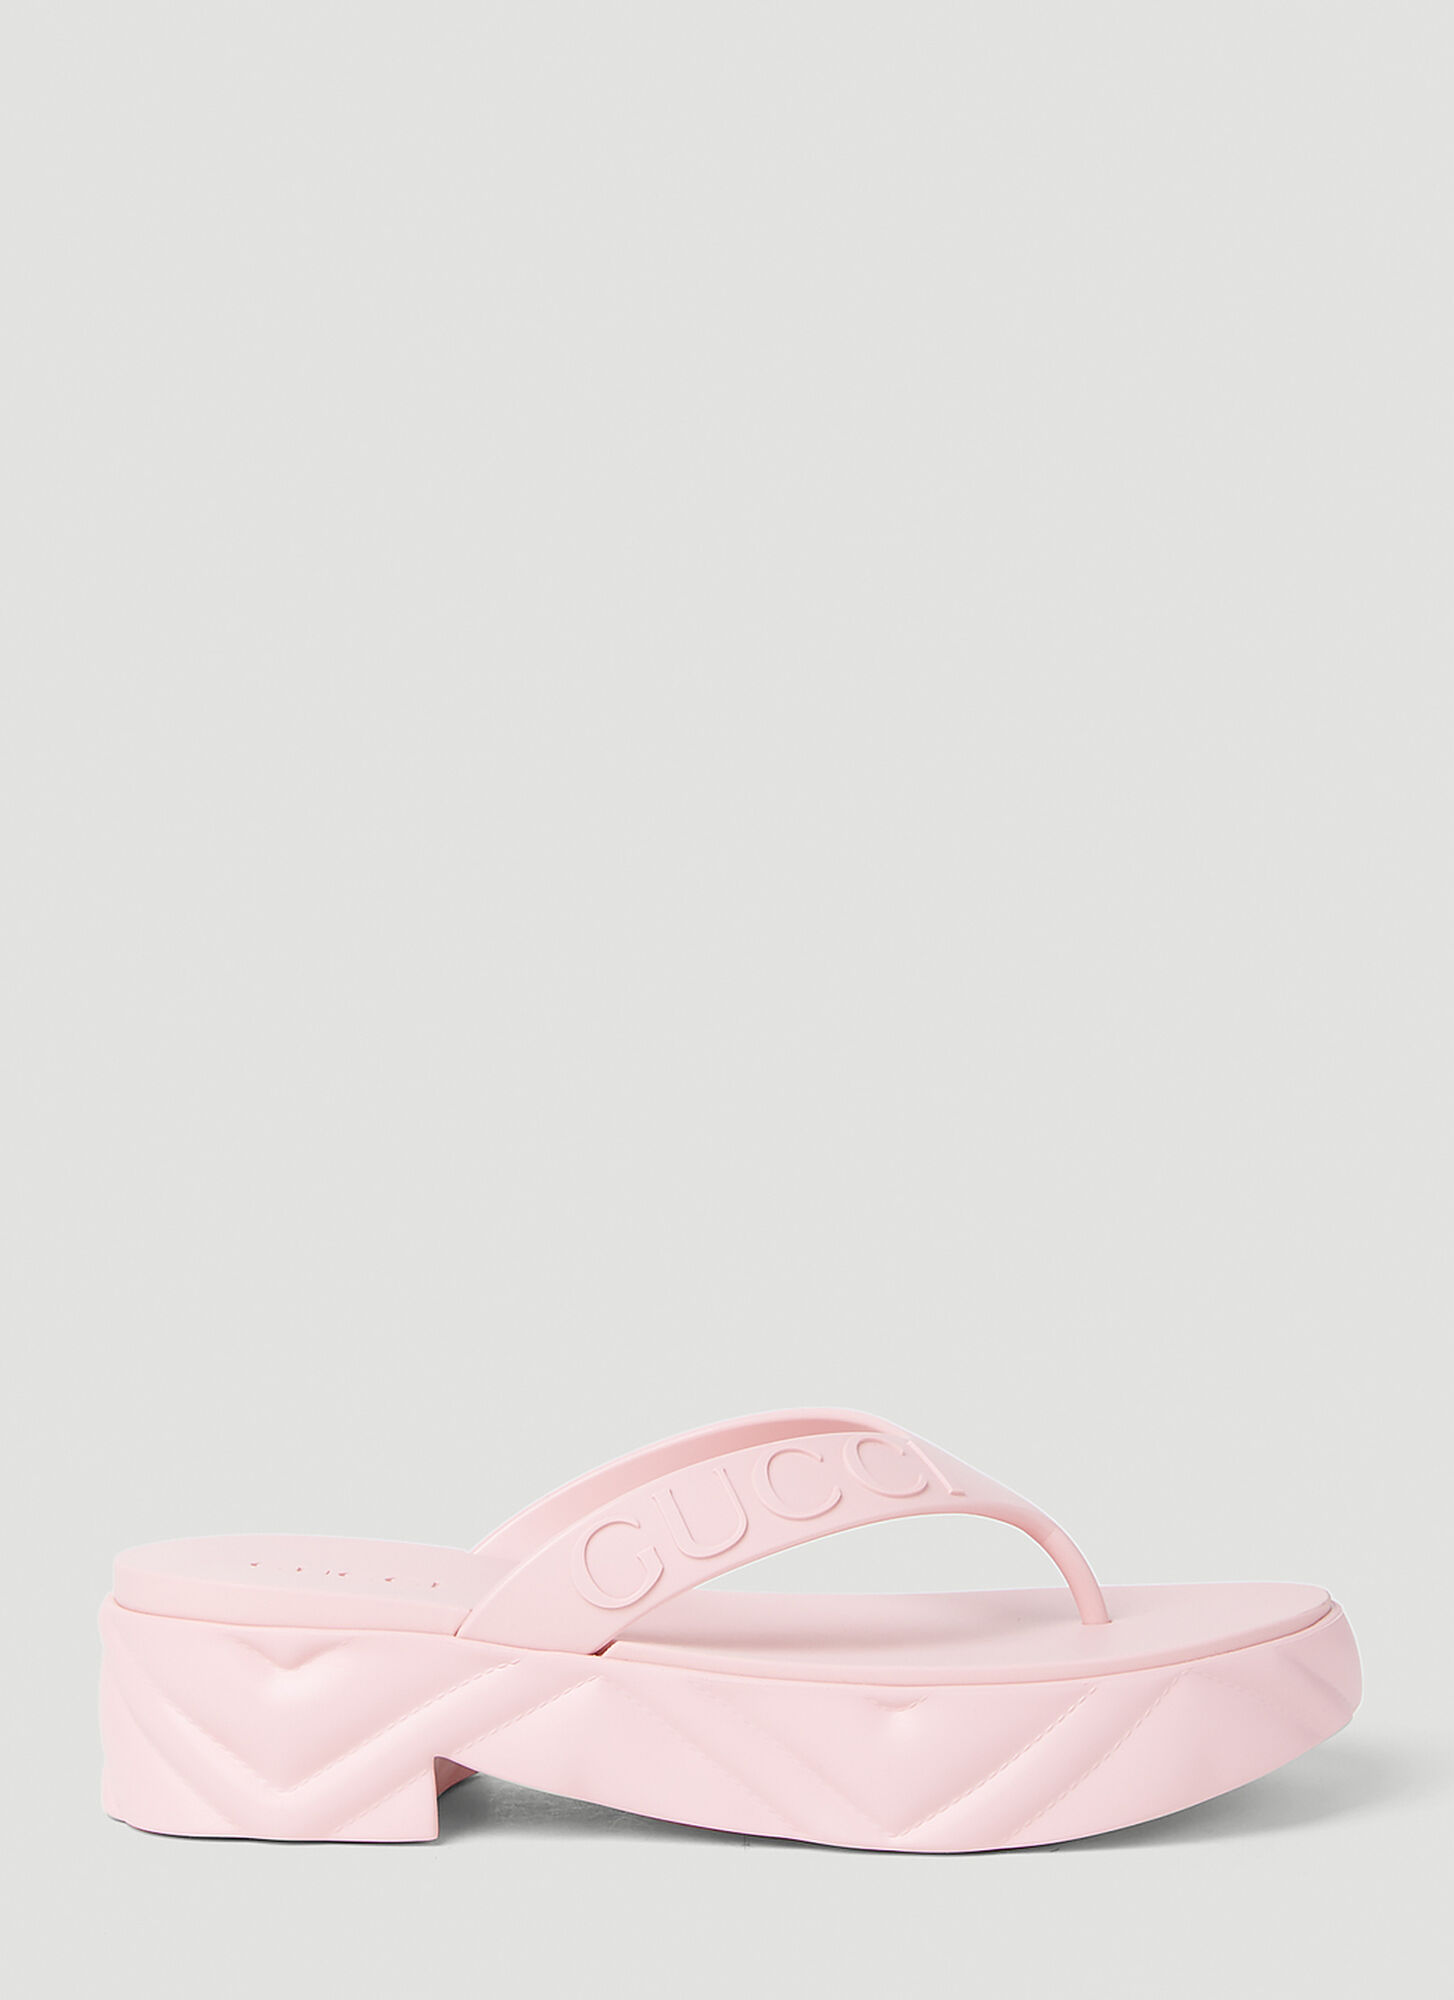 Gucci Thong Platform Sandal In Pink